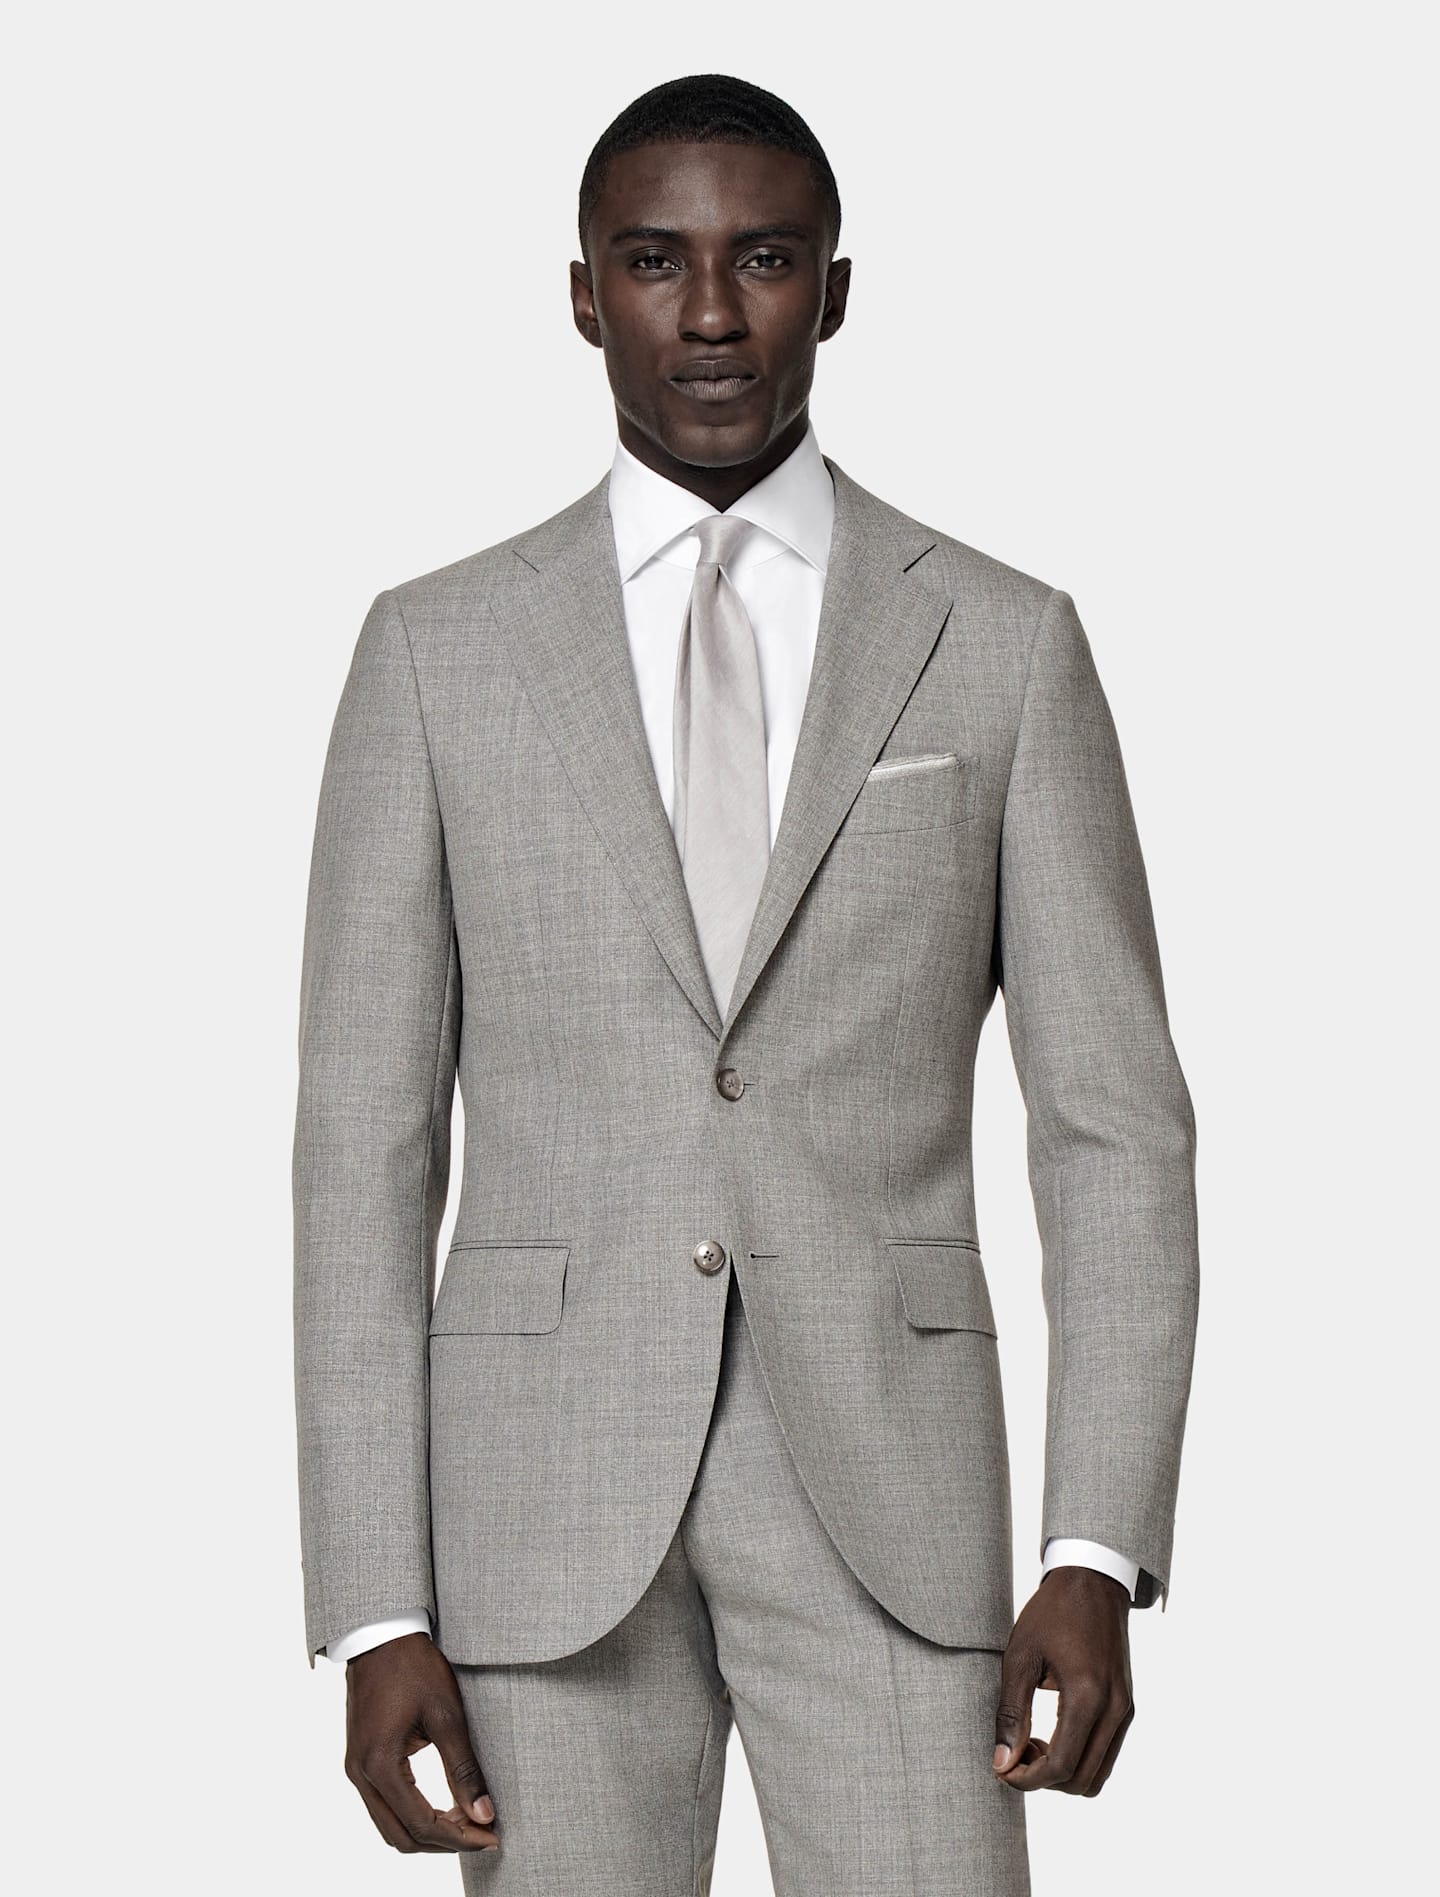 Traje gris de corte sencillo con camisa blanca y corbata gris de seda.